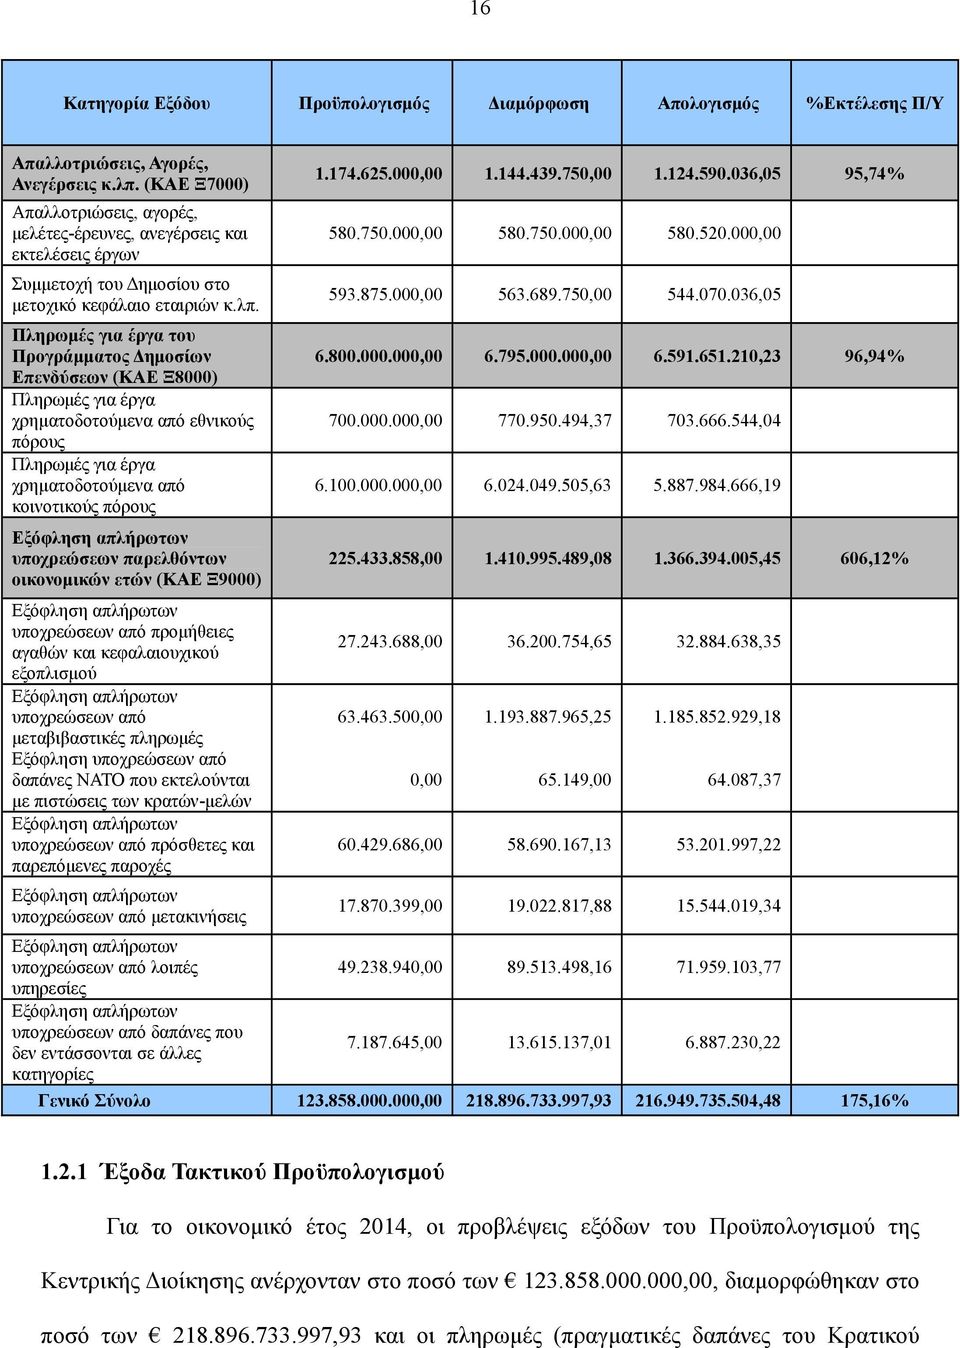 Πληρωμές για έργα του Προγράμματος Δημοσίων Επενδύσεων (ΚΑΕ Ξ8000) Πληρωμές για έργα χρηματοδοτούμενα από εθνικούς πόρους Πληρωμές για έργα χρηματοδοτούμενα από κοινοτικούς πόρους Εξόφληση απλήρωτων